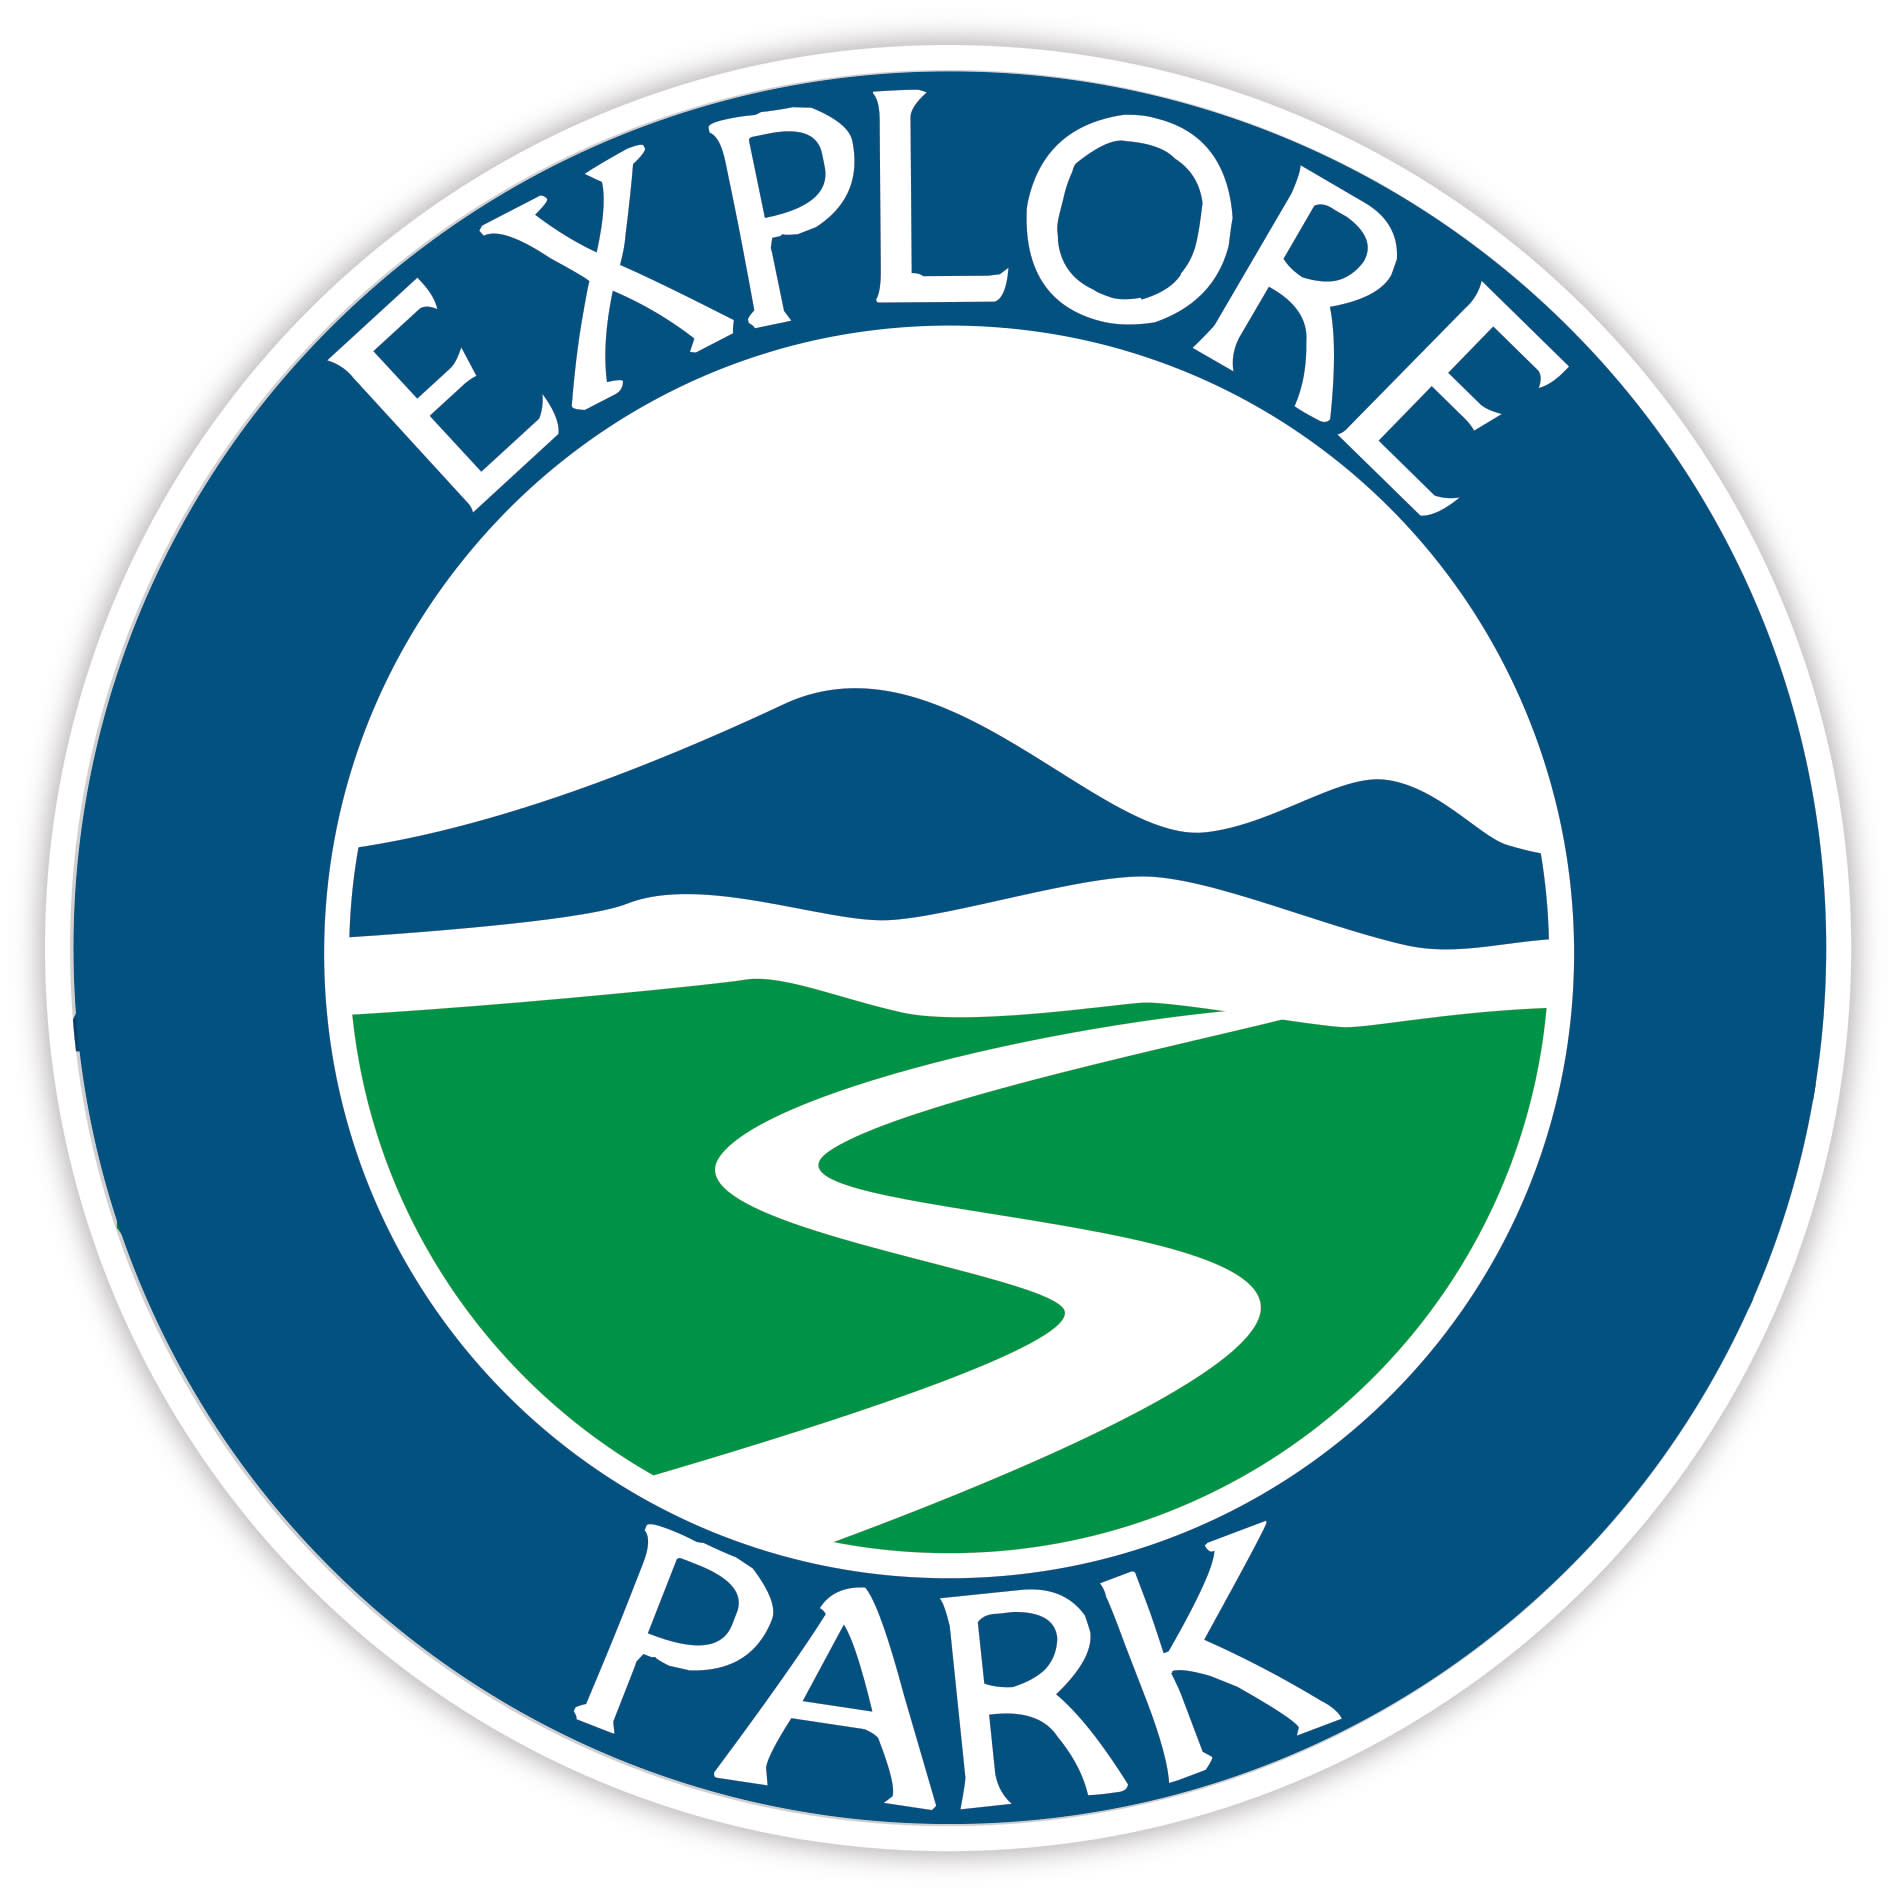 Explore Park